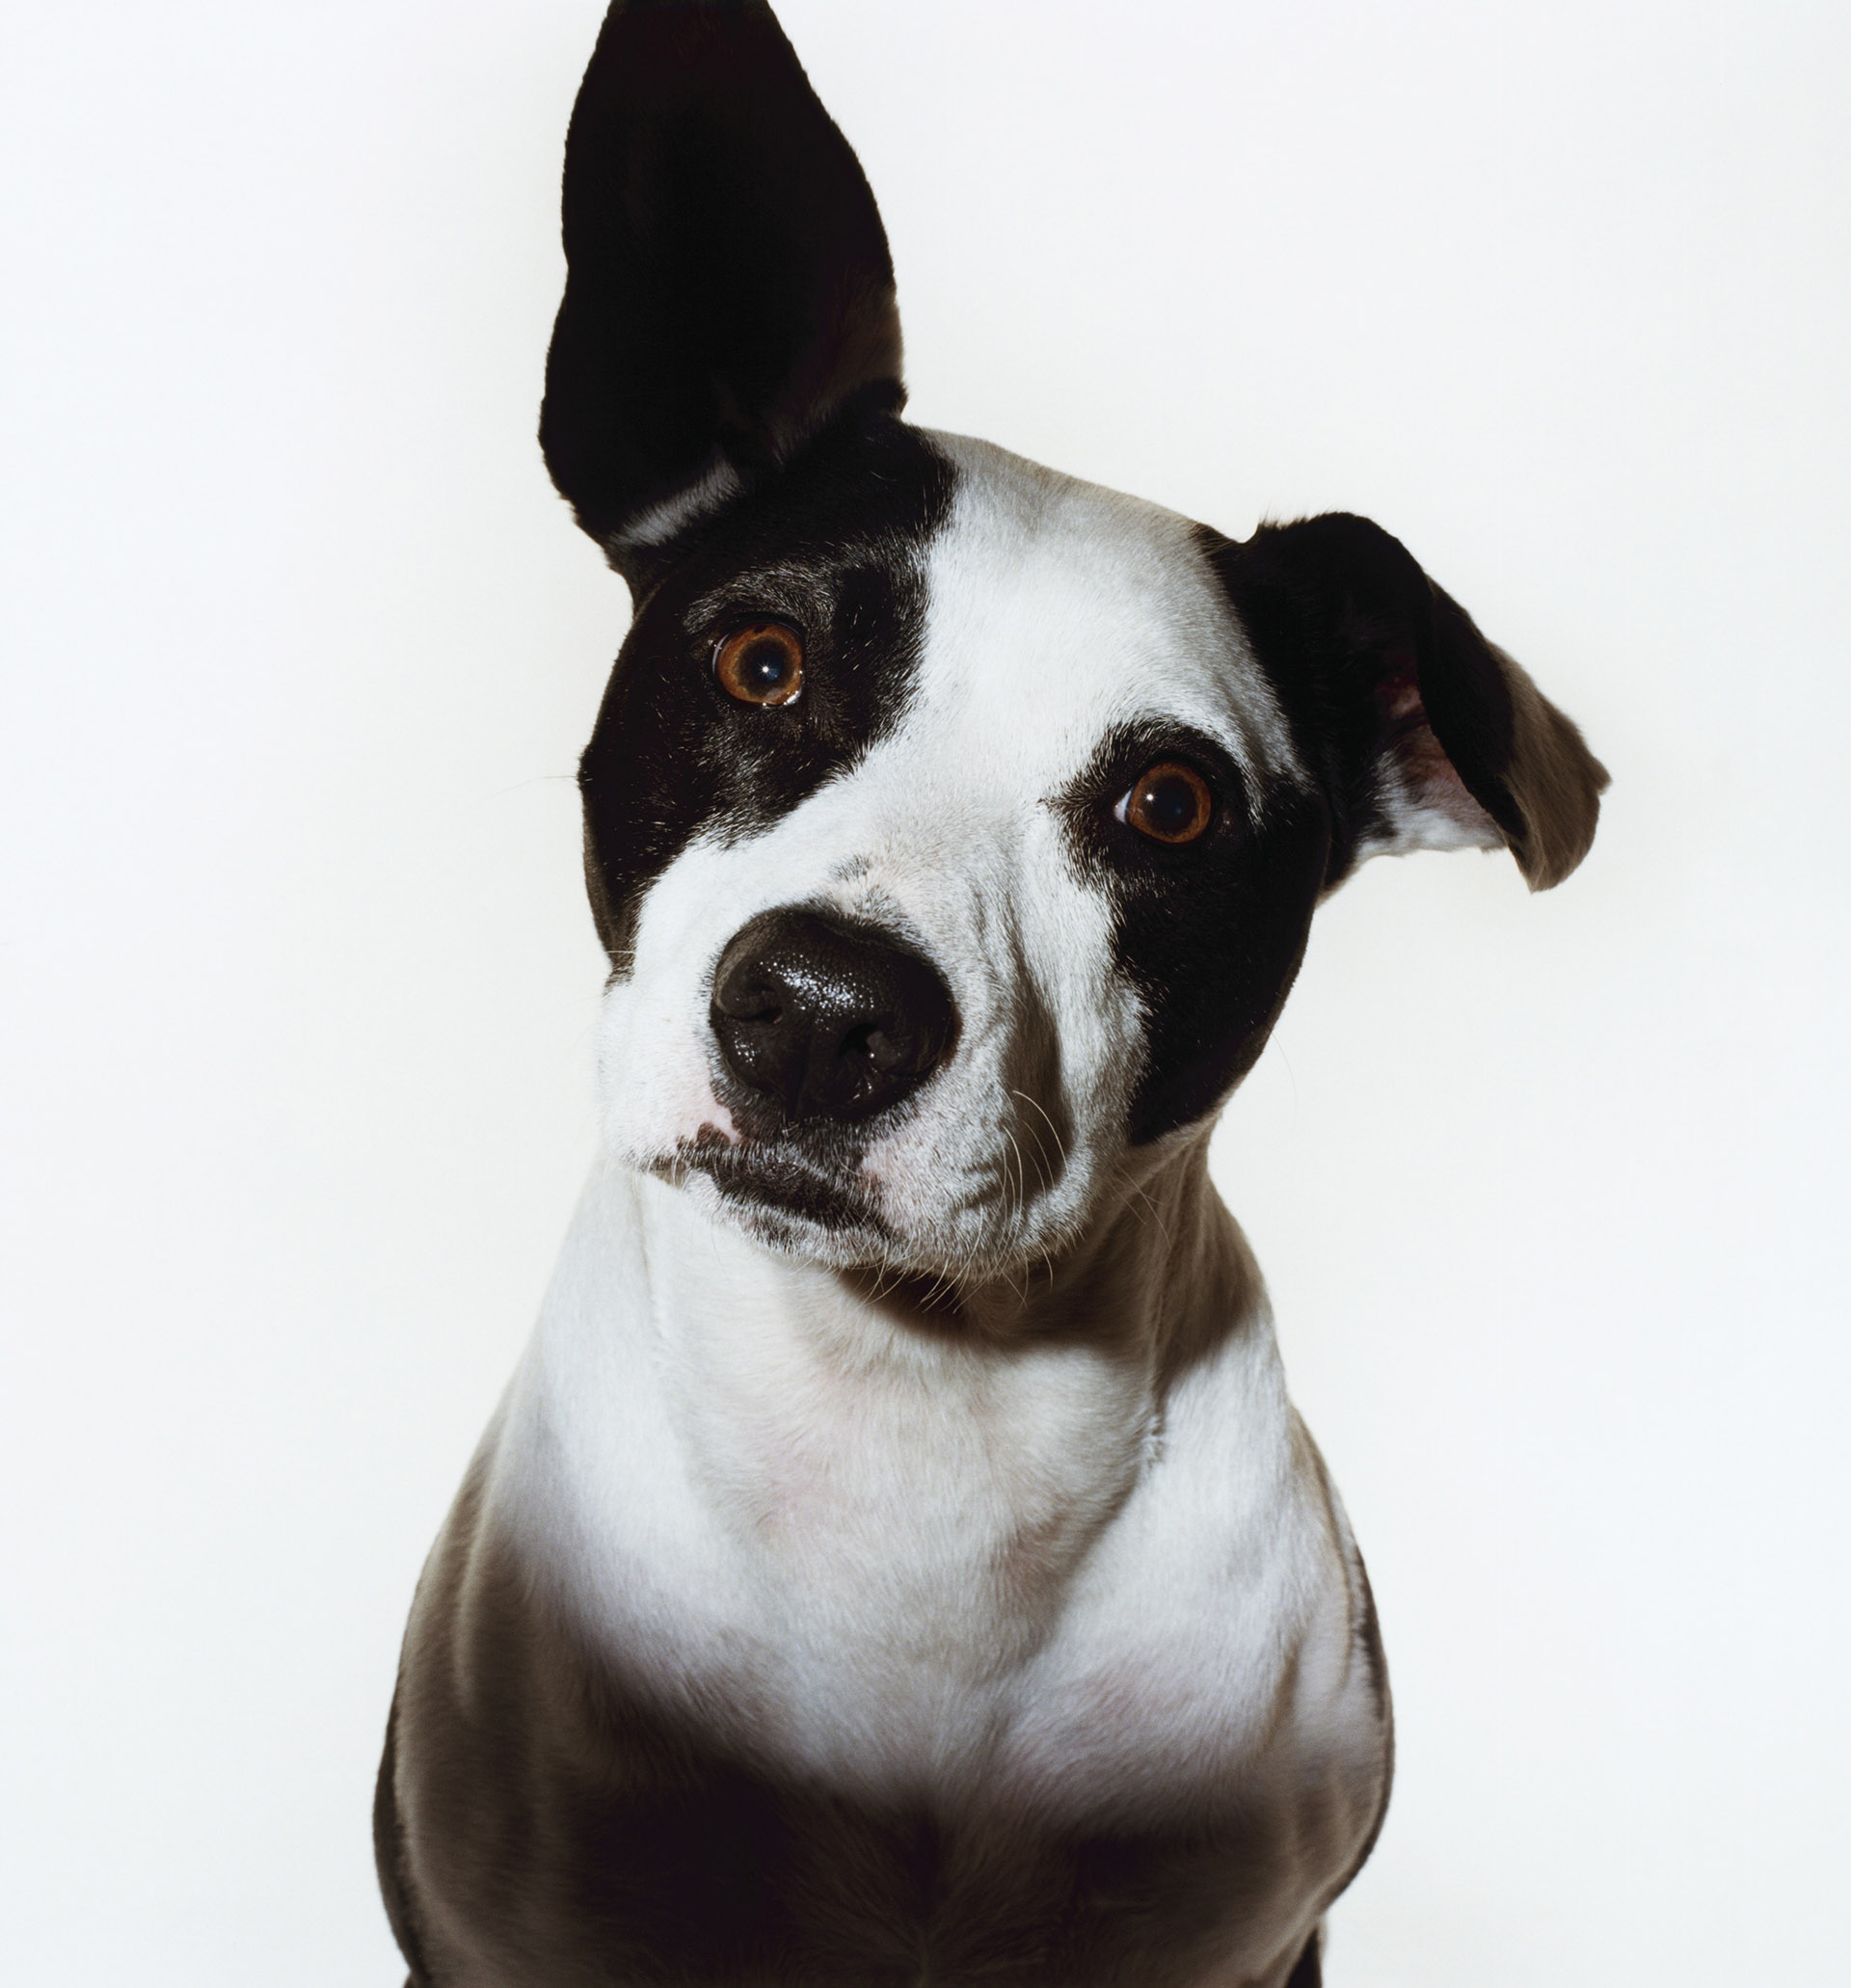 El principal movimiento de las orejas de los perros es, aunque parezca obvio, para escuchar a su dueño (Getty Images)